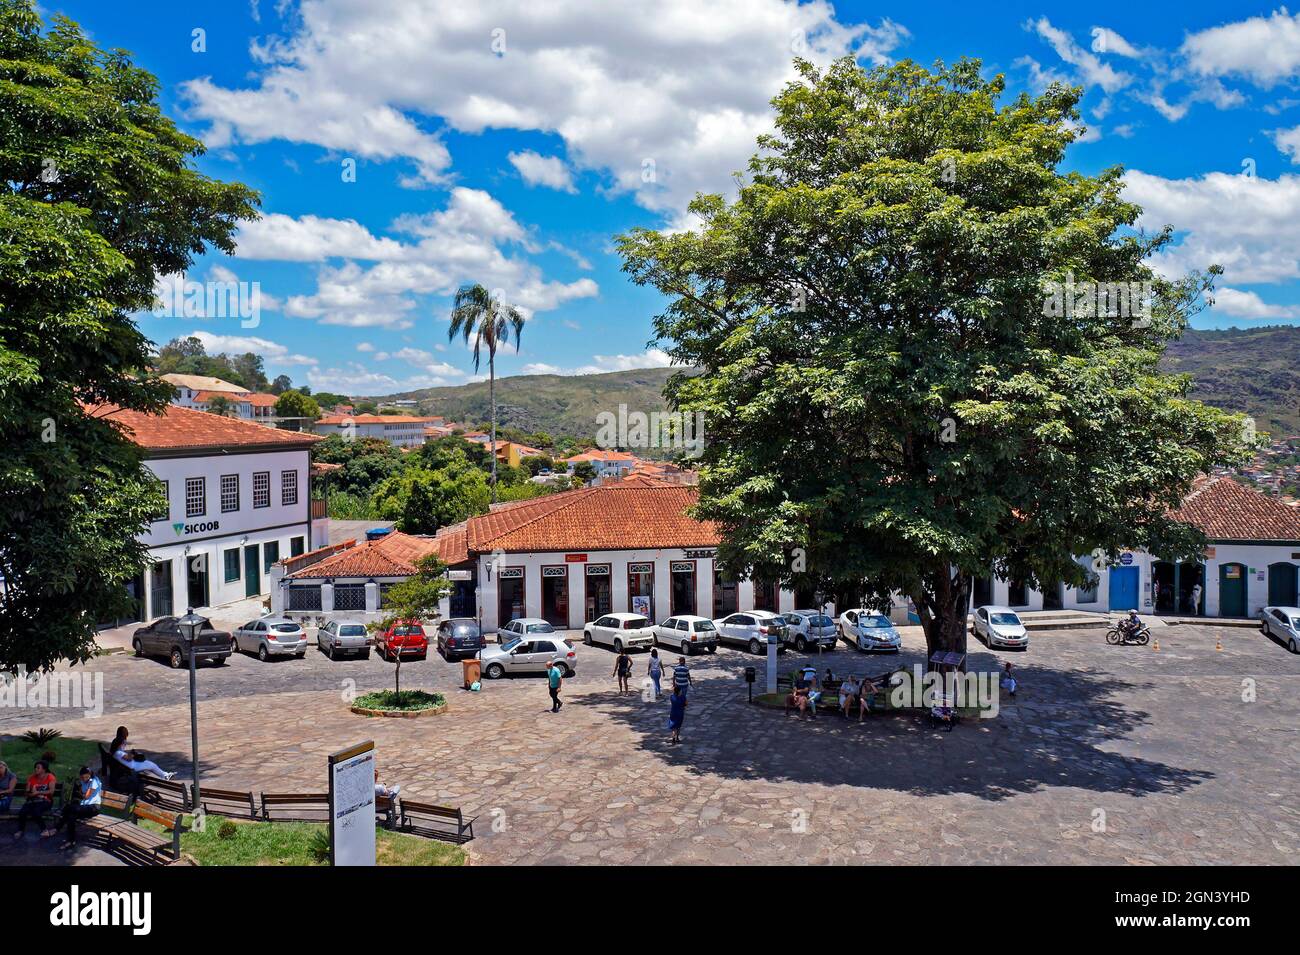 DIAMANTINA, MINAS GERAIS, BRASIL - 22 DE ENERO de 2019: Plaza en el centro histórico de la ciudad Foto de stock